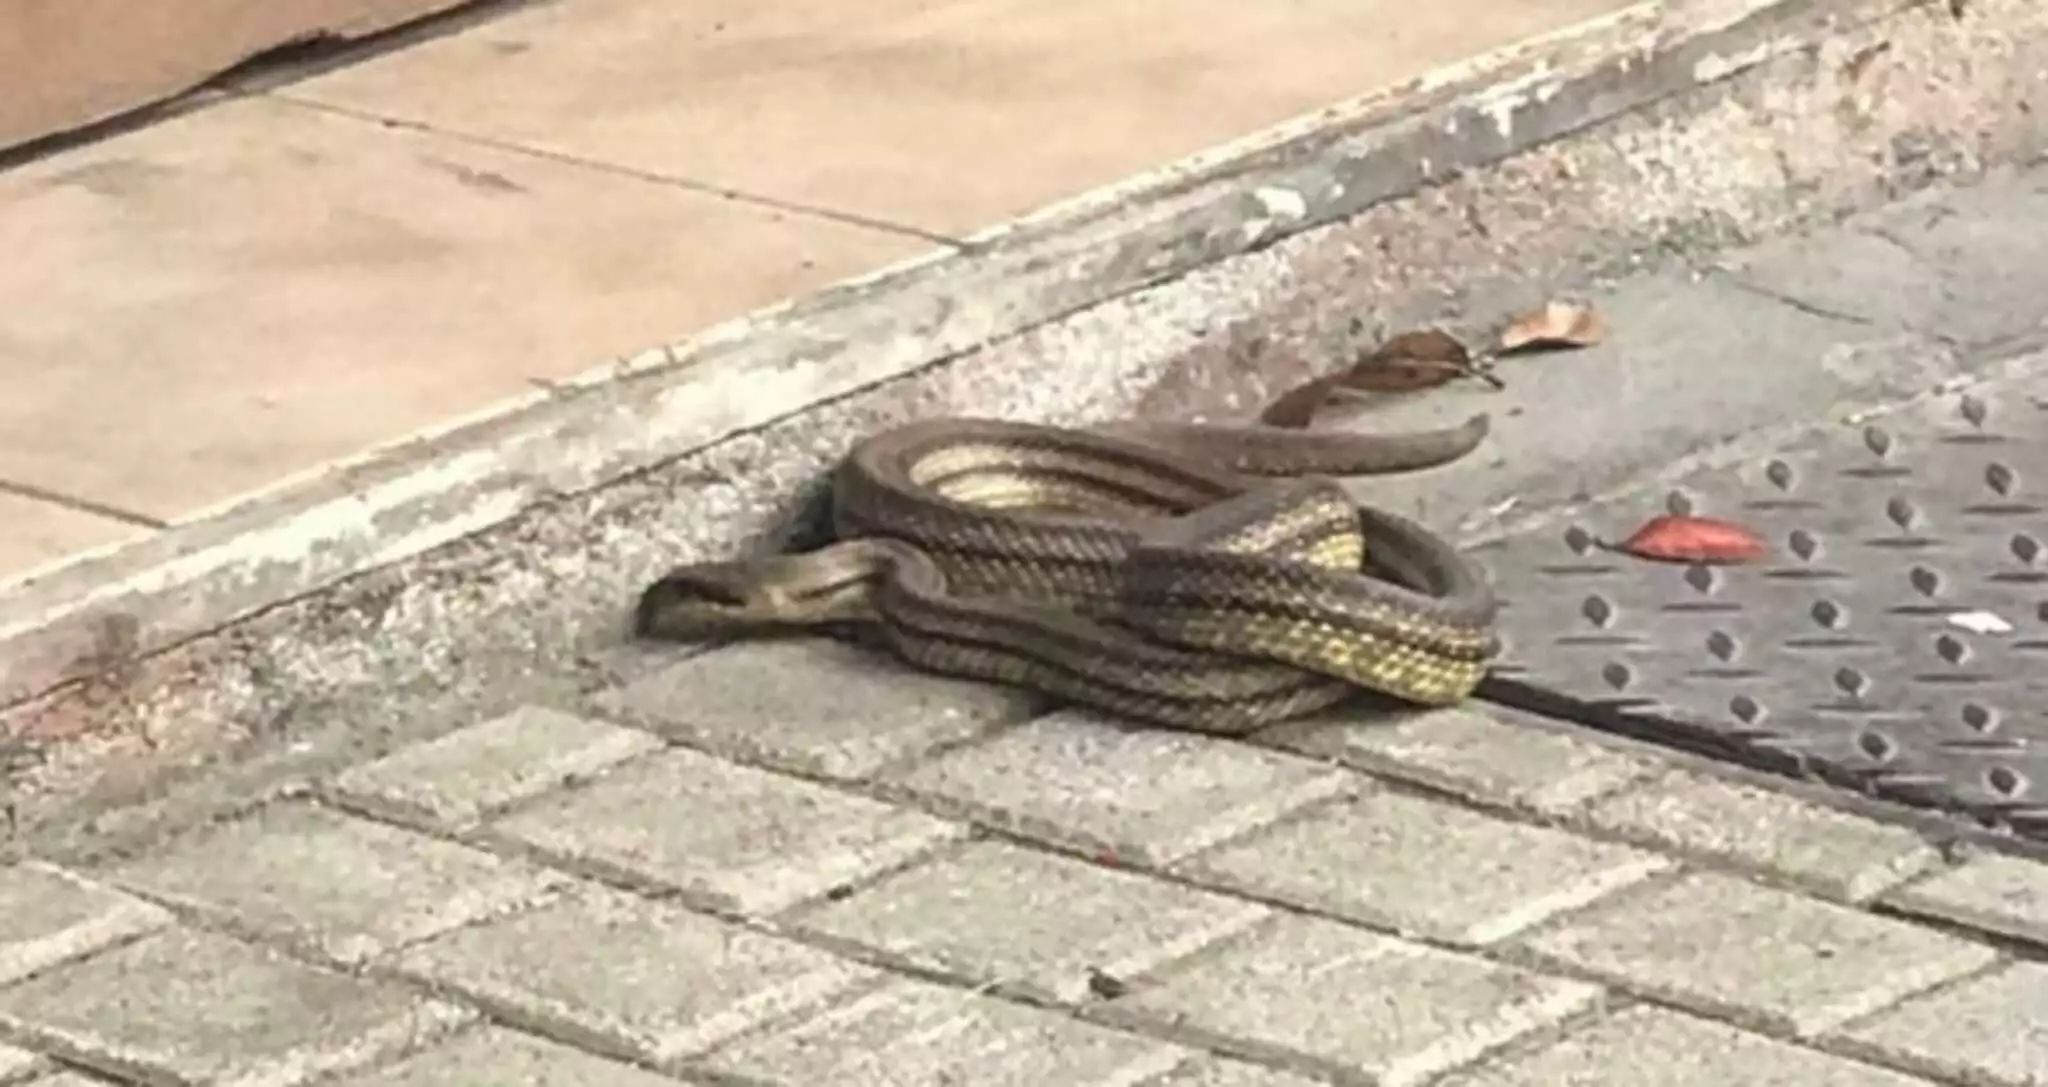 Λάρισα: Φίδι «έκοβε βόλτες» στο κέντρο της πόλης προκαλώντας αναστάτωση (φωτο)